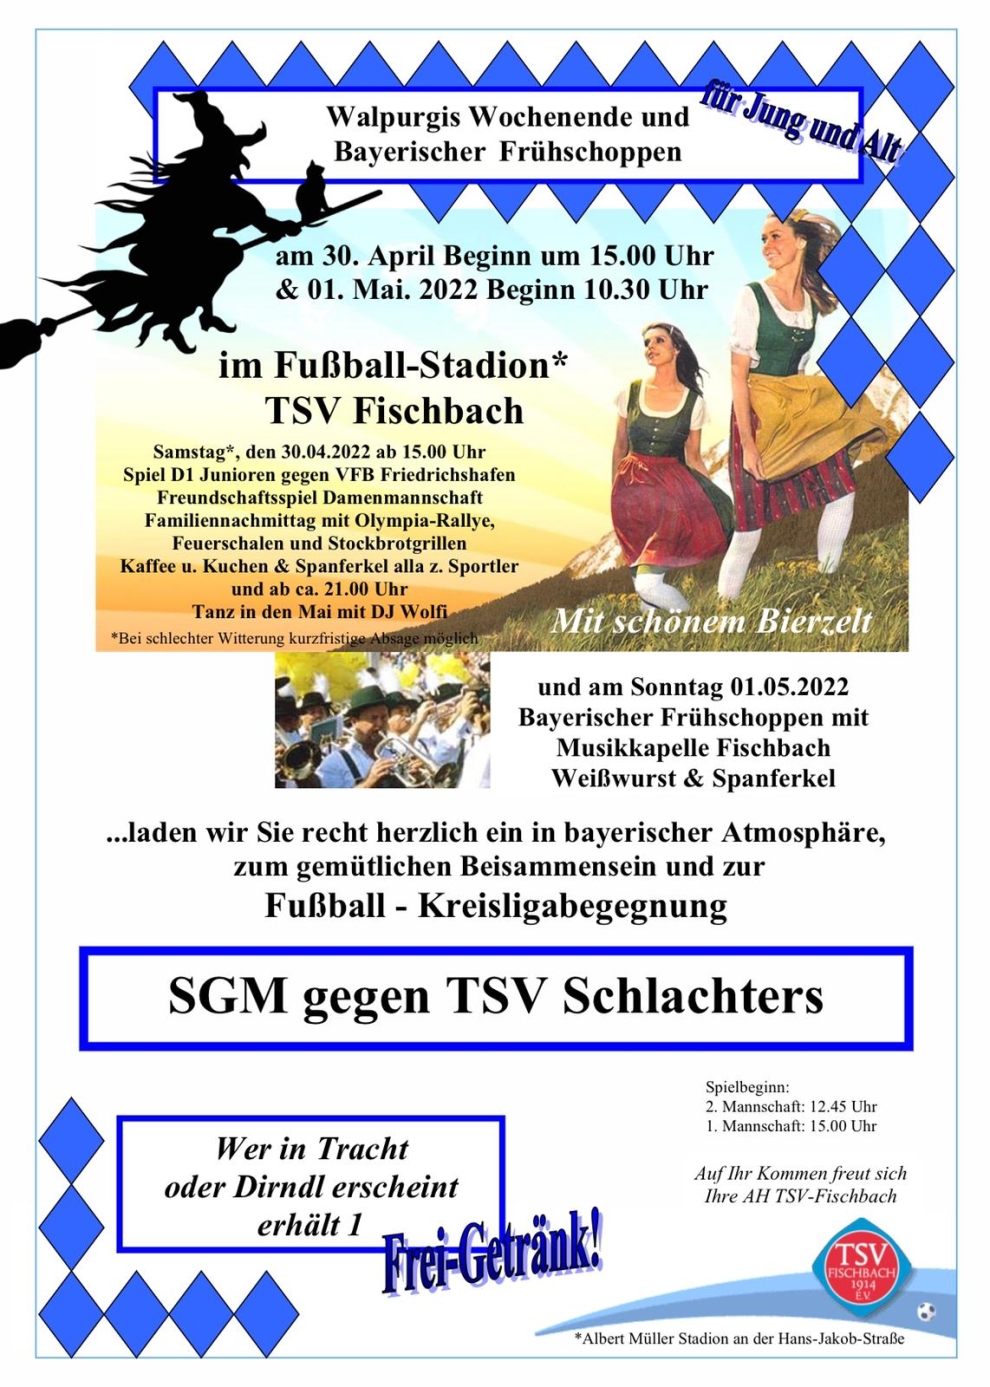 Sportlich-Festliches Walpurgis-Wochenende bei den TSV-Fußballern